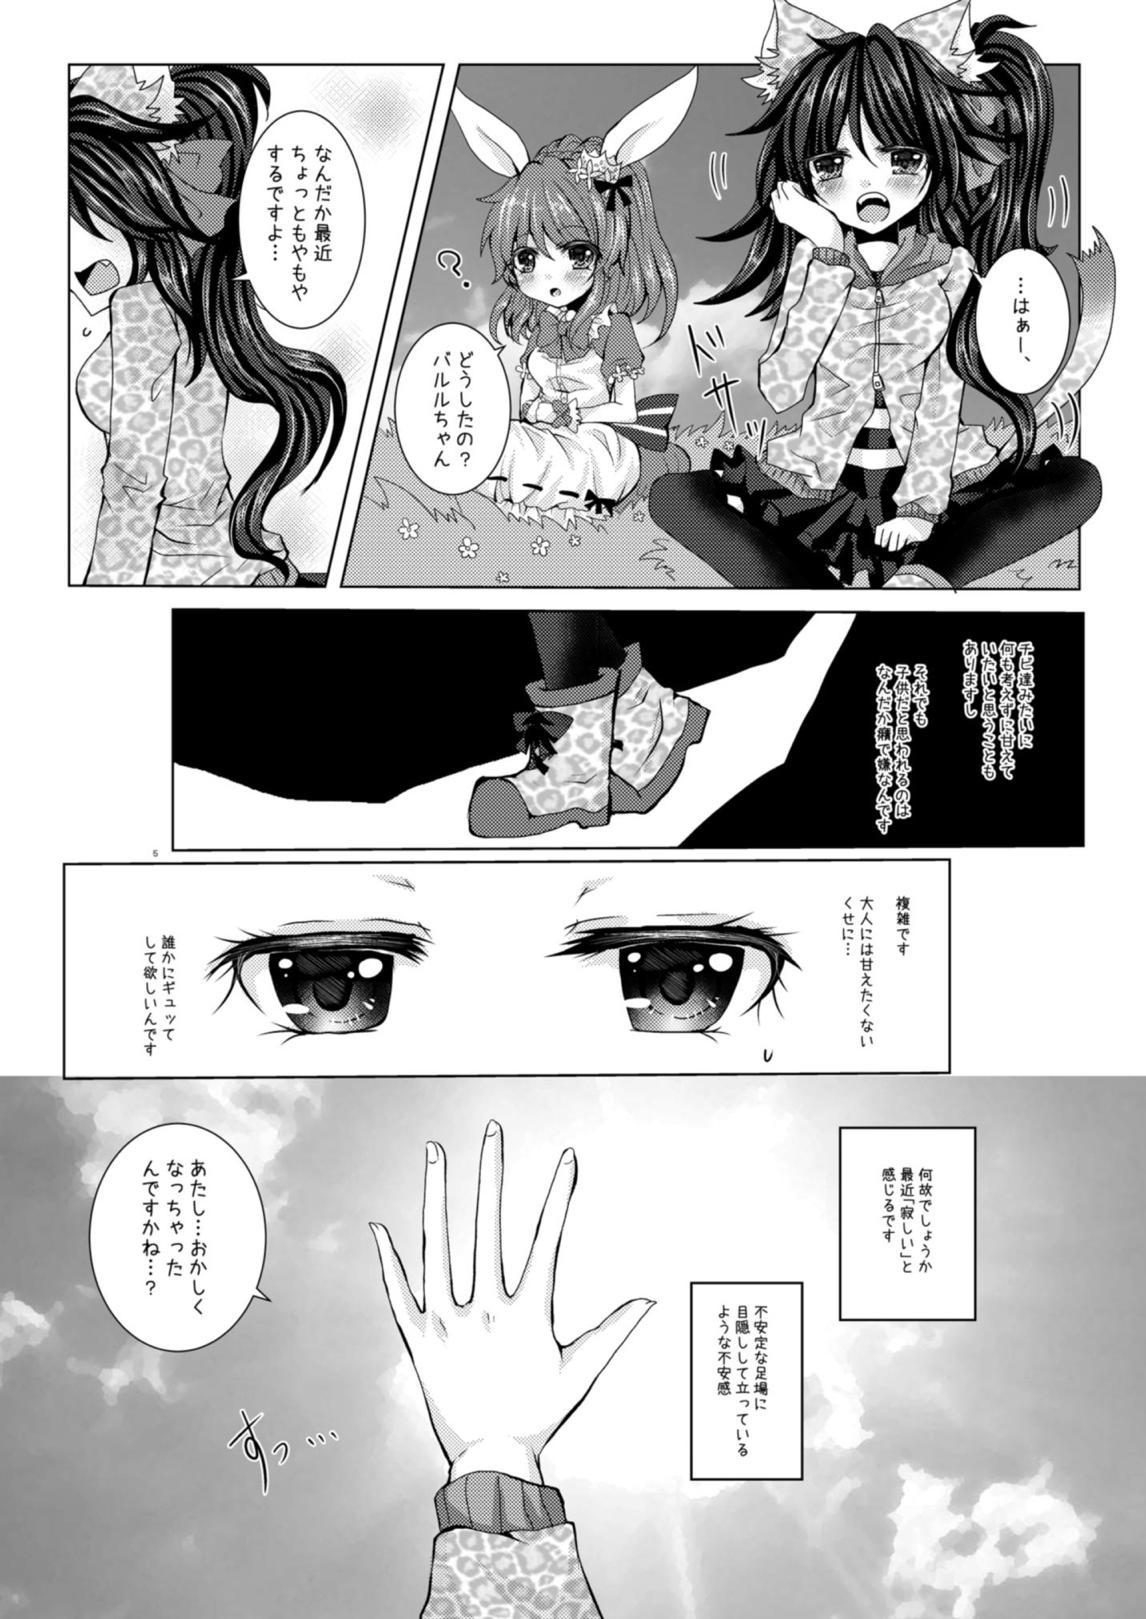 Classy Girls' Talk wa Amakunai - Emil chronicle online Kitchen - Page 4